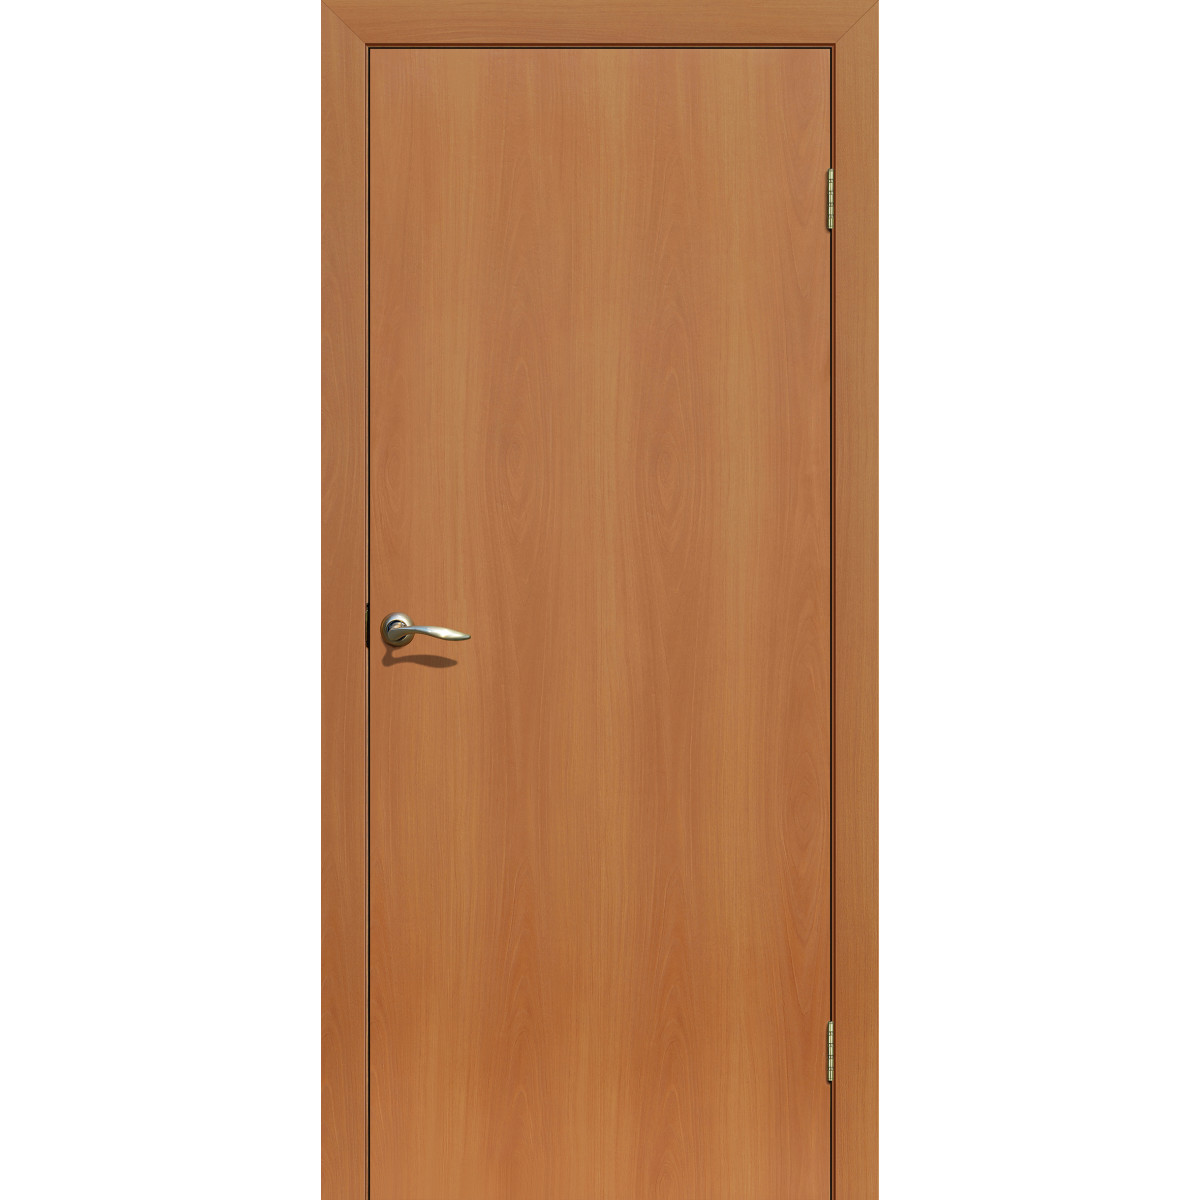 Дверь межкомнатная глухая 90x200 см, ламинация, цвет миланский орех